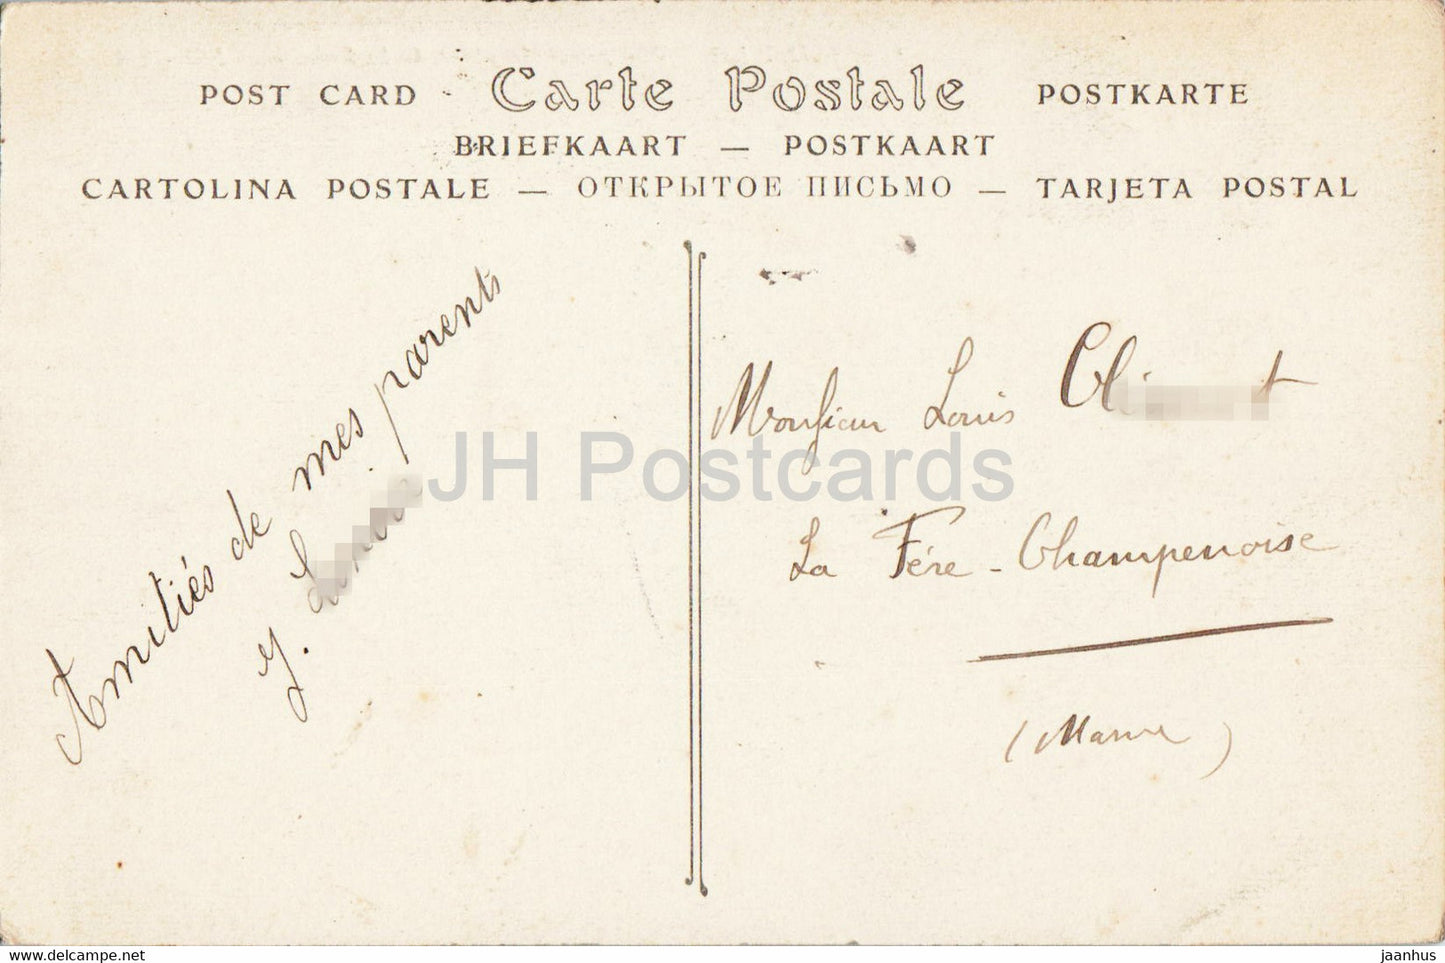 Saint-Lo-Vue-Generale-Preis de la Falaise – 1. alte Postkarte - 1910 - Frankreich - gebraucht